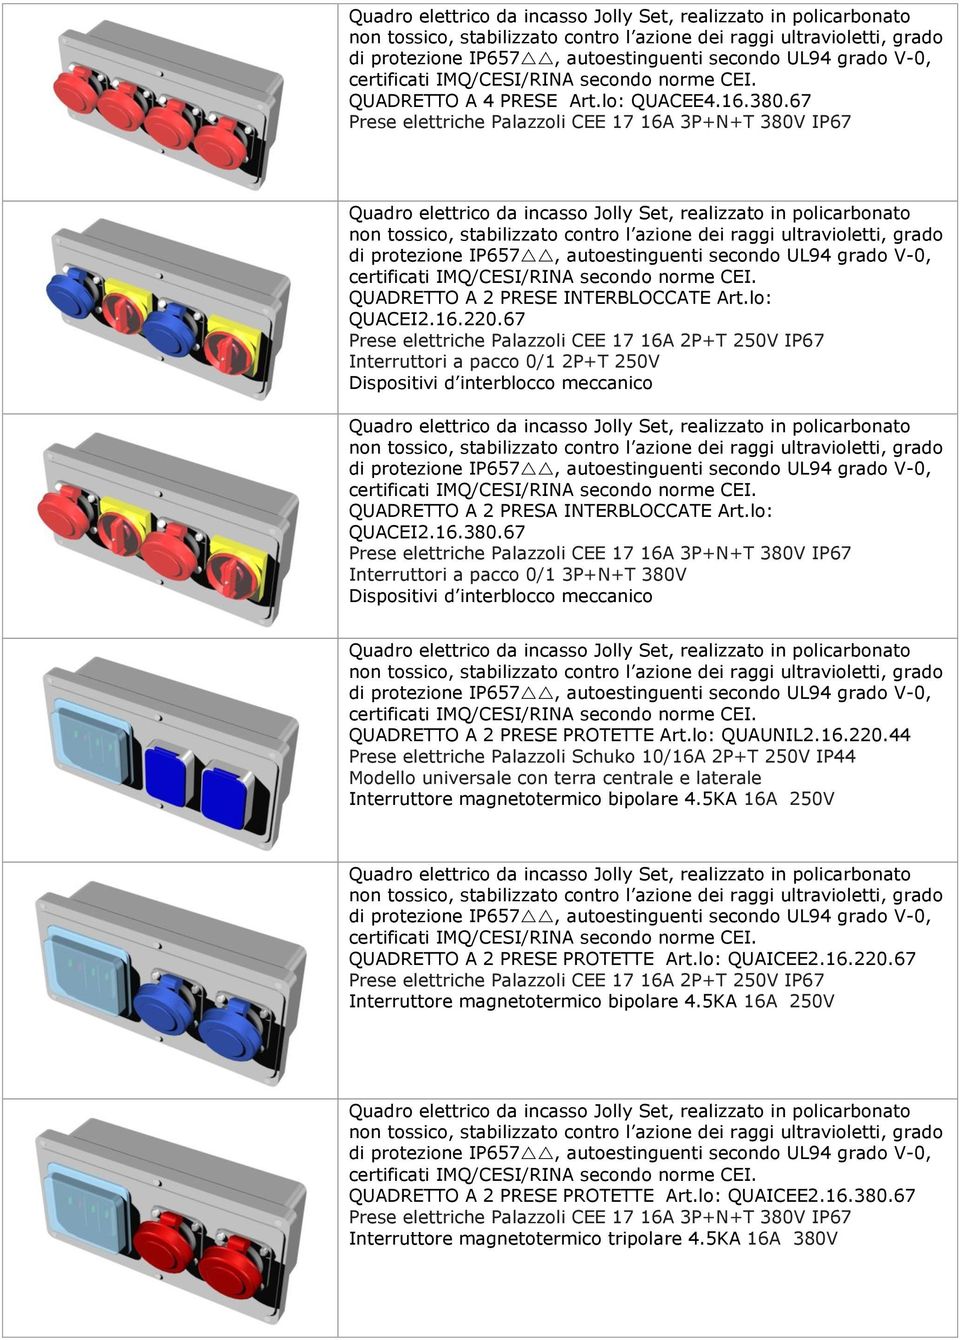 67 Interruttori a pacco 0/1 3P+N+T 380V Dispositivi d interblocco meccanico QUADRETTO A 2 PRESE PROTETTE Art.lo: QUAUNIL2.16.220.